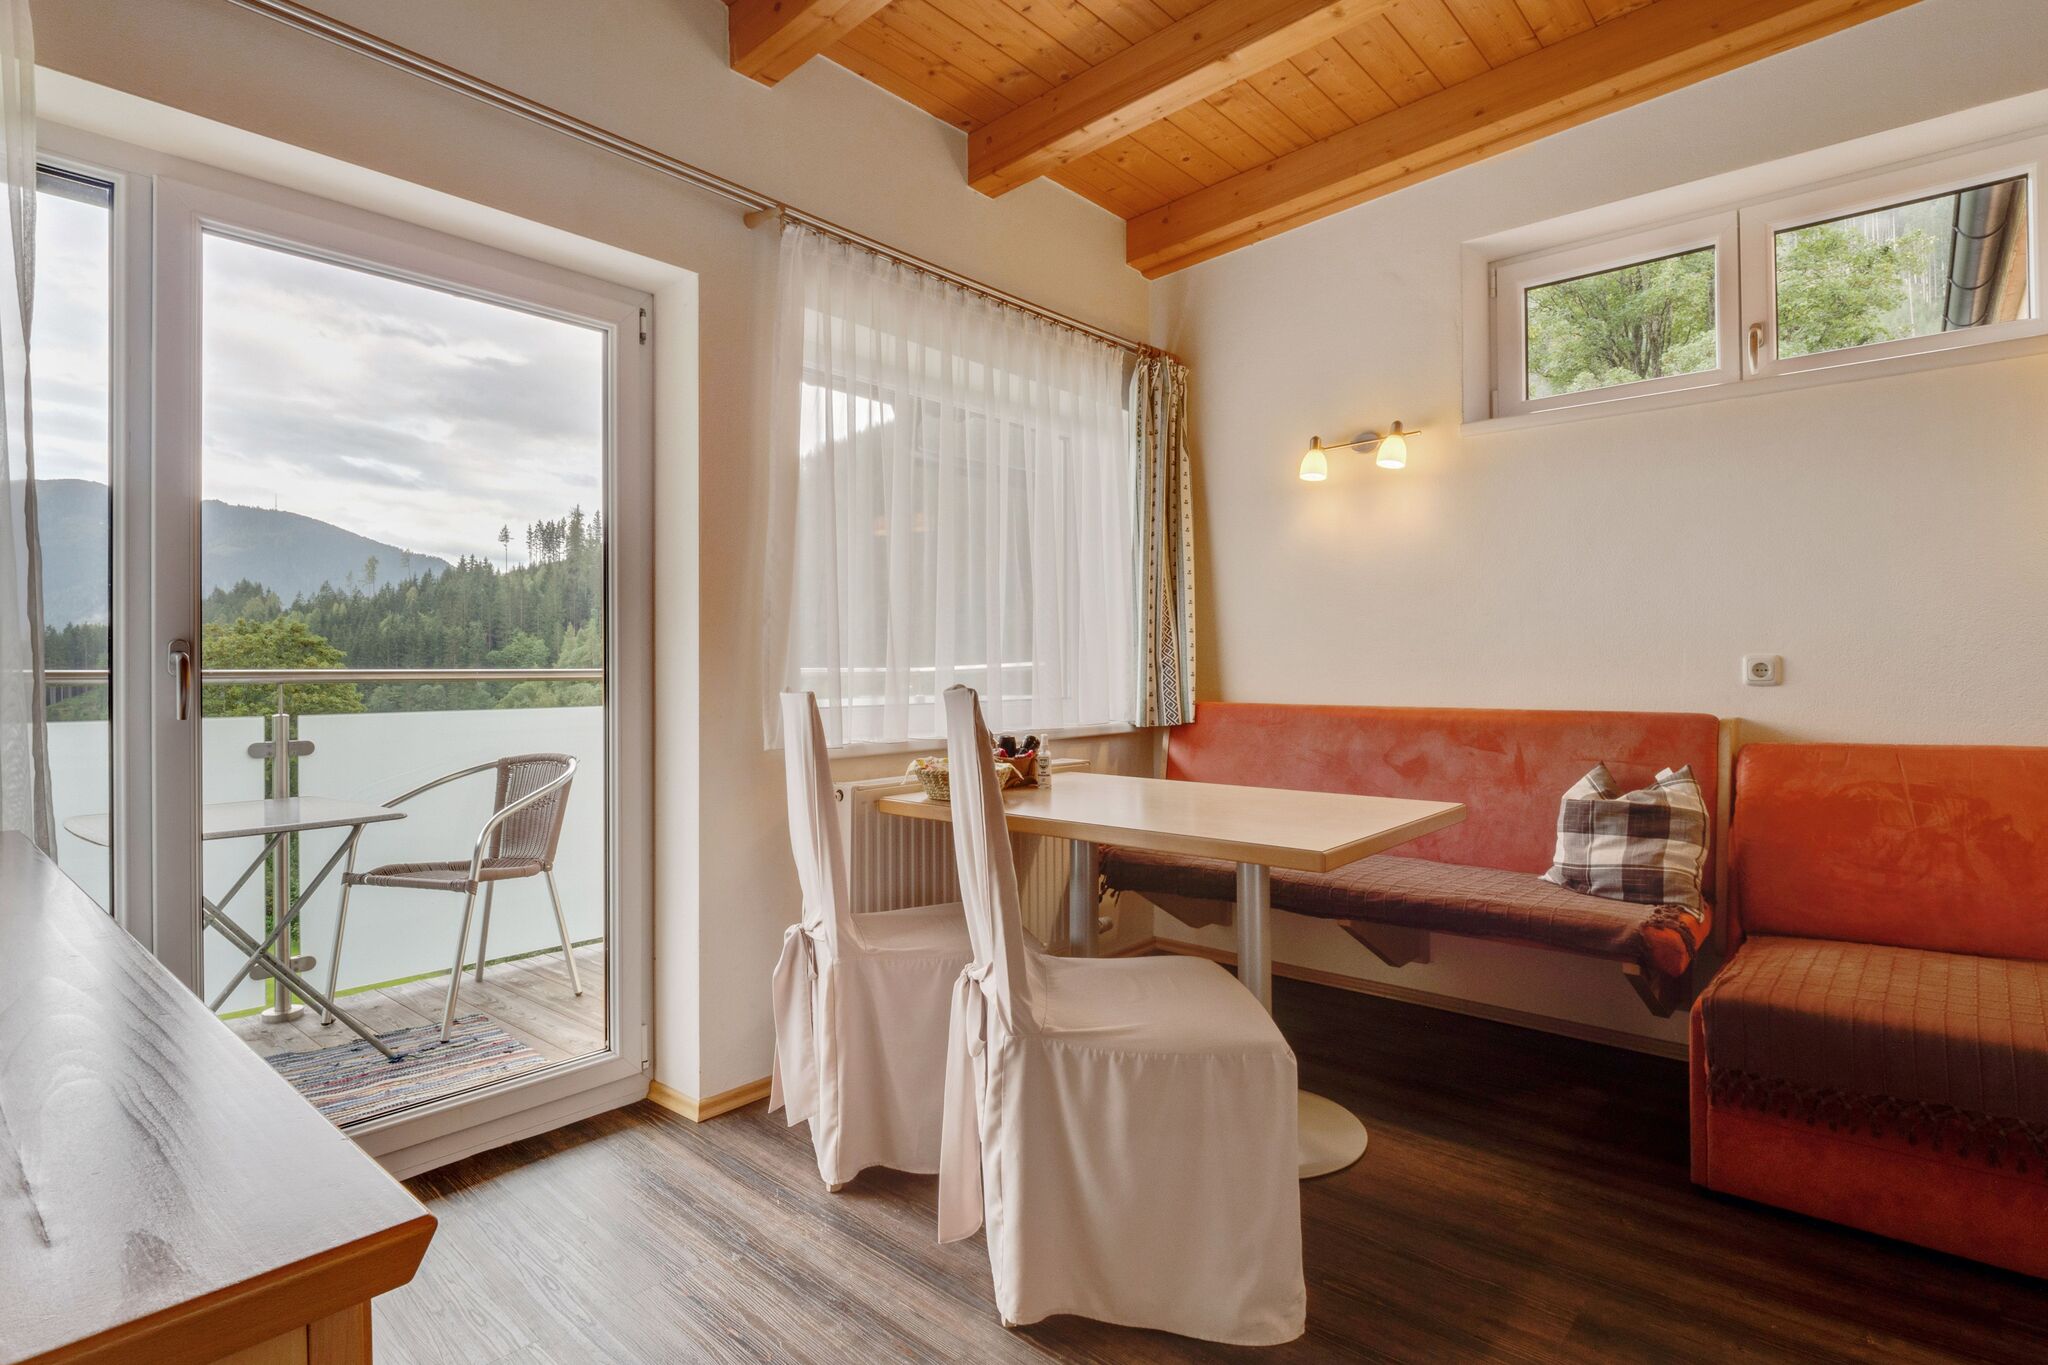 Gemütliche Ferienwohnung in Zell am See mit Balkon nahe Skigebiet